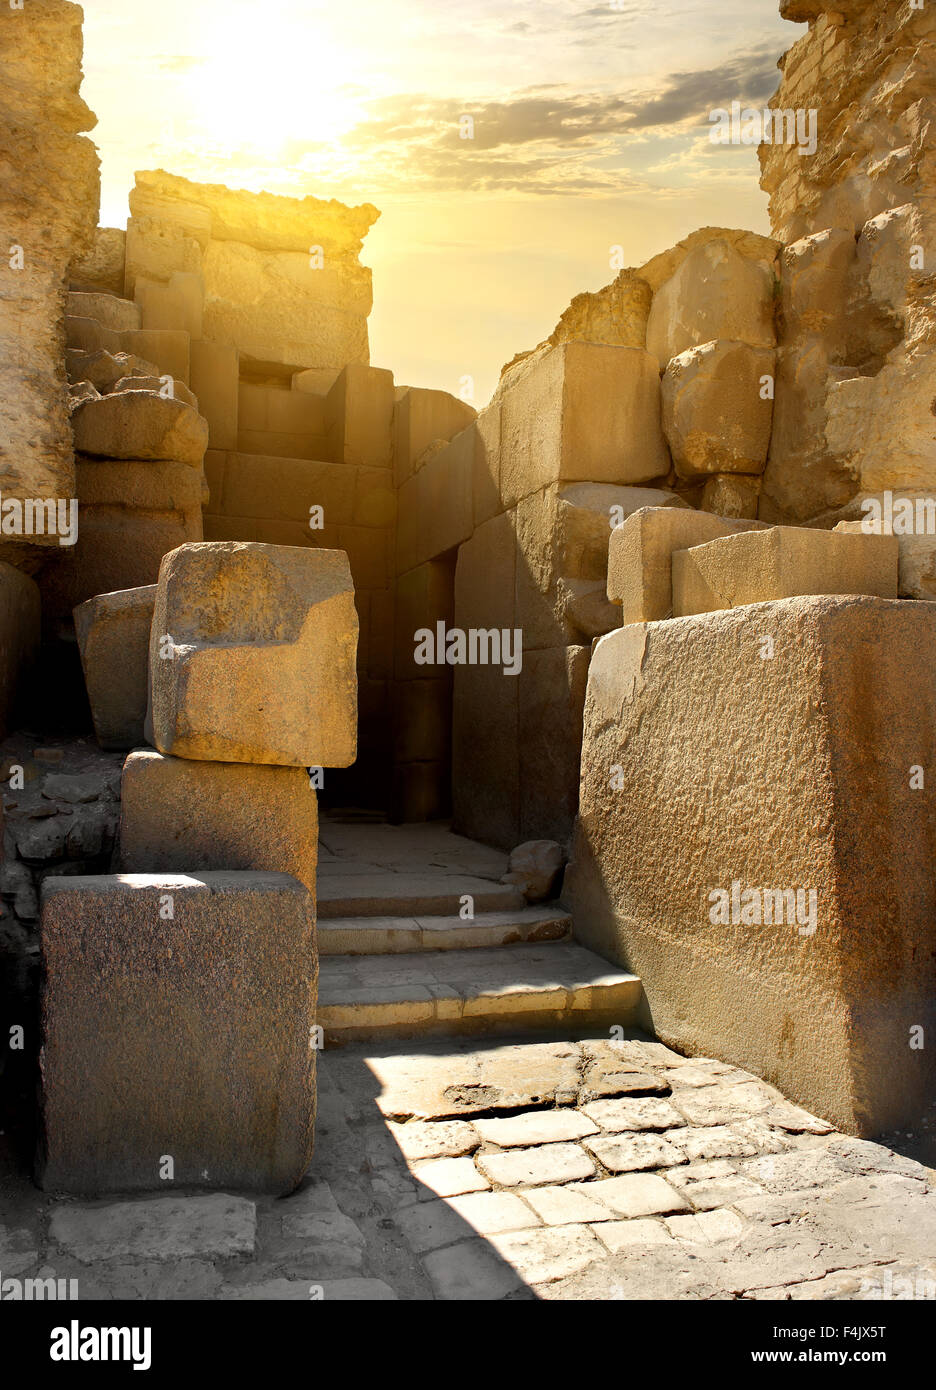 Ruined stone walls of the pharaoh tomb Stock Photo